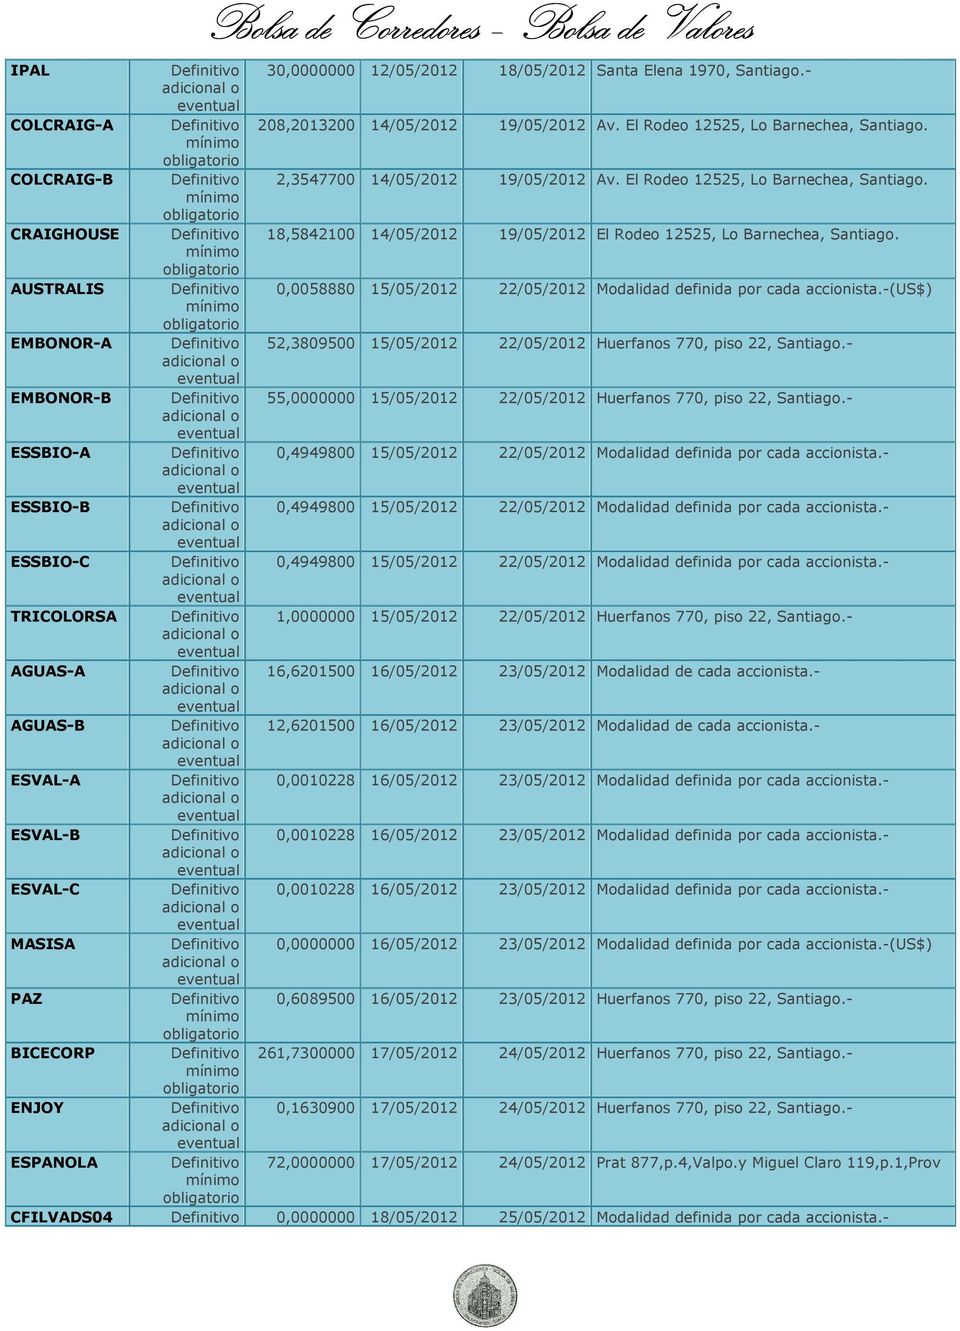 AUSTRALIS 0,0058880 15/05/2012 22/05/2012 Modalidad definida por cada accionista.-(us$) EMBONOR-A 52,3809500 15/05/2012 22/05/2012 Huerfanos 770, piso 22, Santiago.